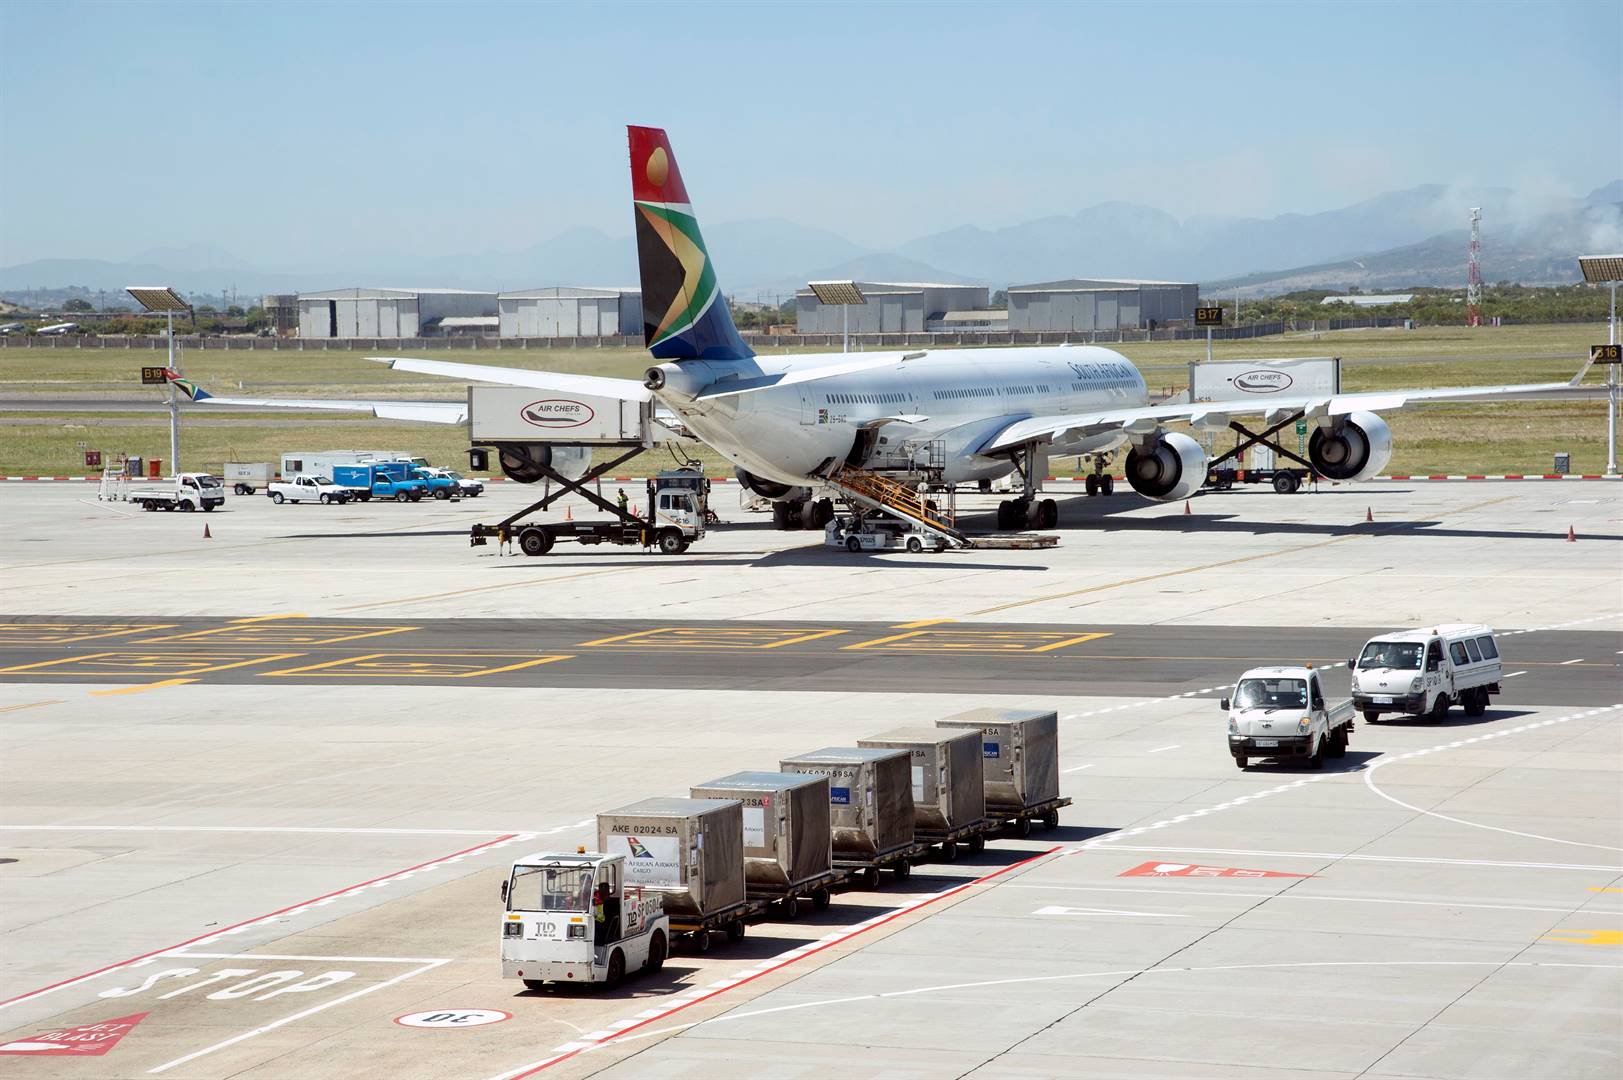 Die Suid-Afrikaanse Lugdiens (SAL) het vennootskappe met Emirates en die Keniaanse Lugdiens beklink wat passasiers meer toegang tot bestemmings deur middel van verbindingsvlugte met slegs een vliegkaartjie gee. Foto: Getty Images